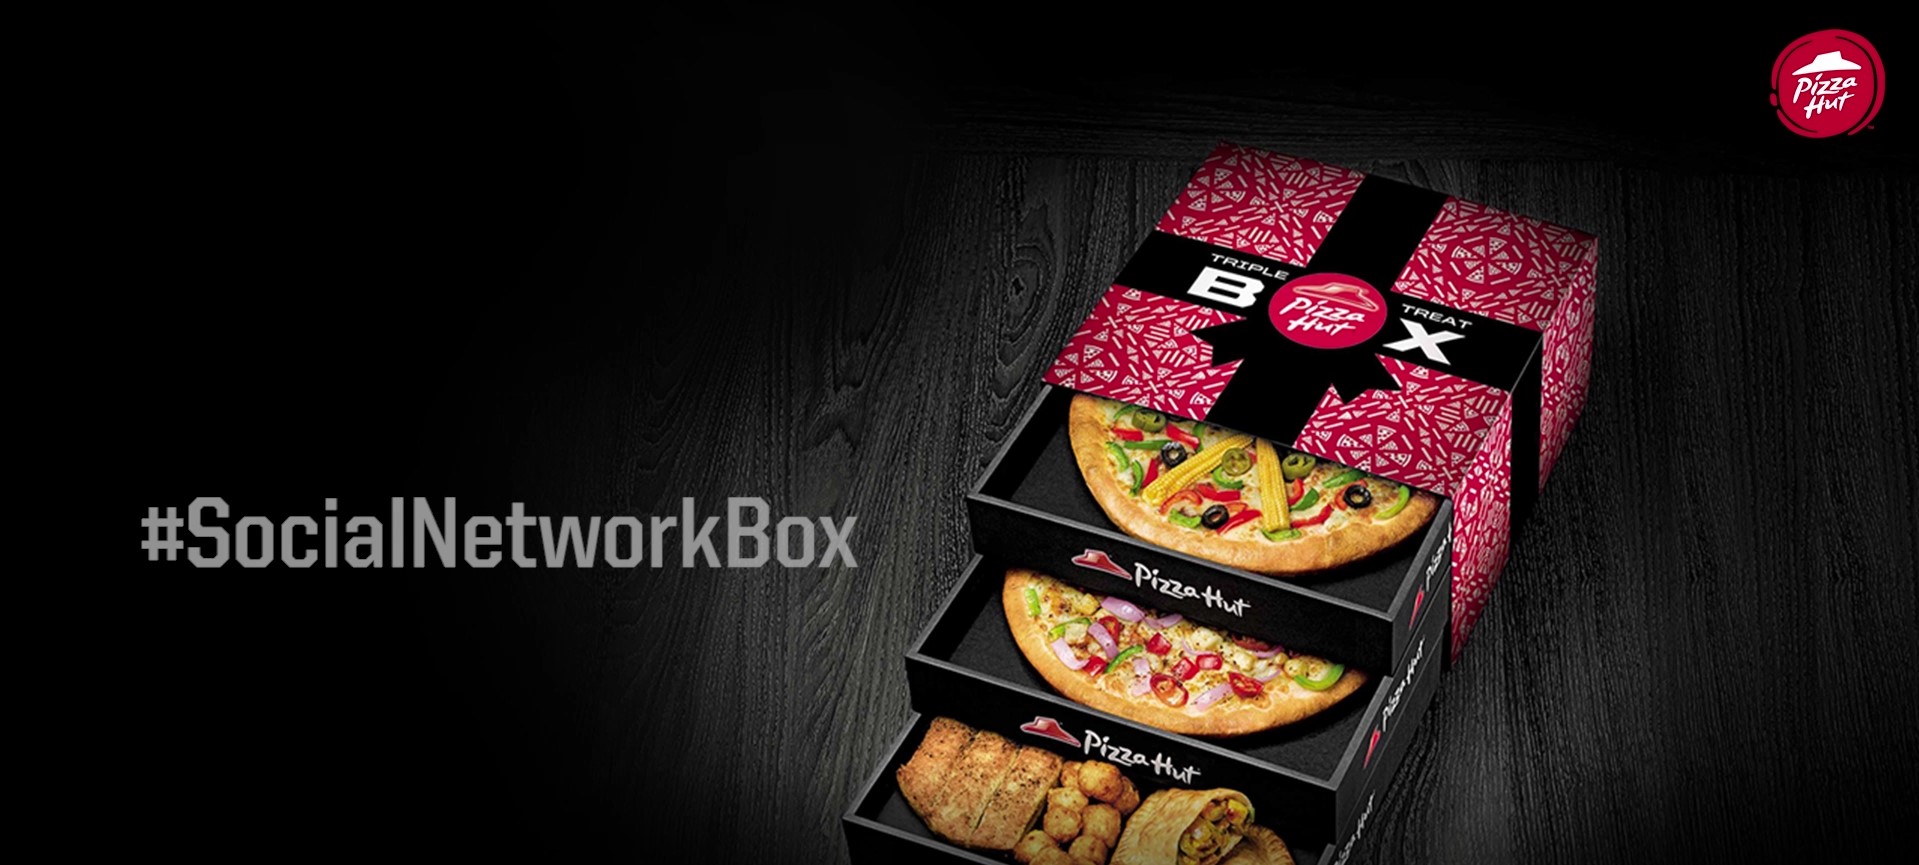 Pizza Hut #SocialNetworkBox